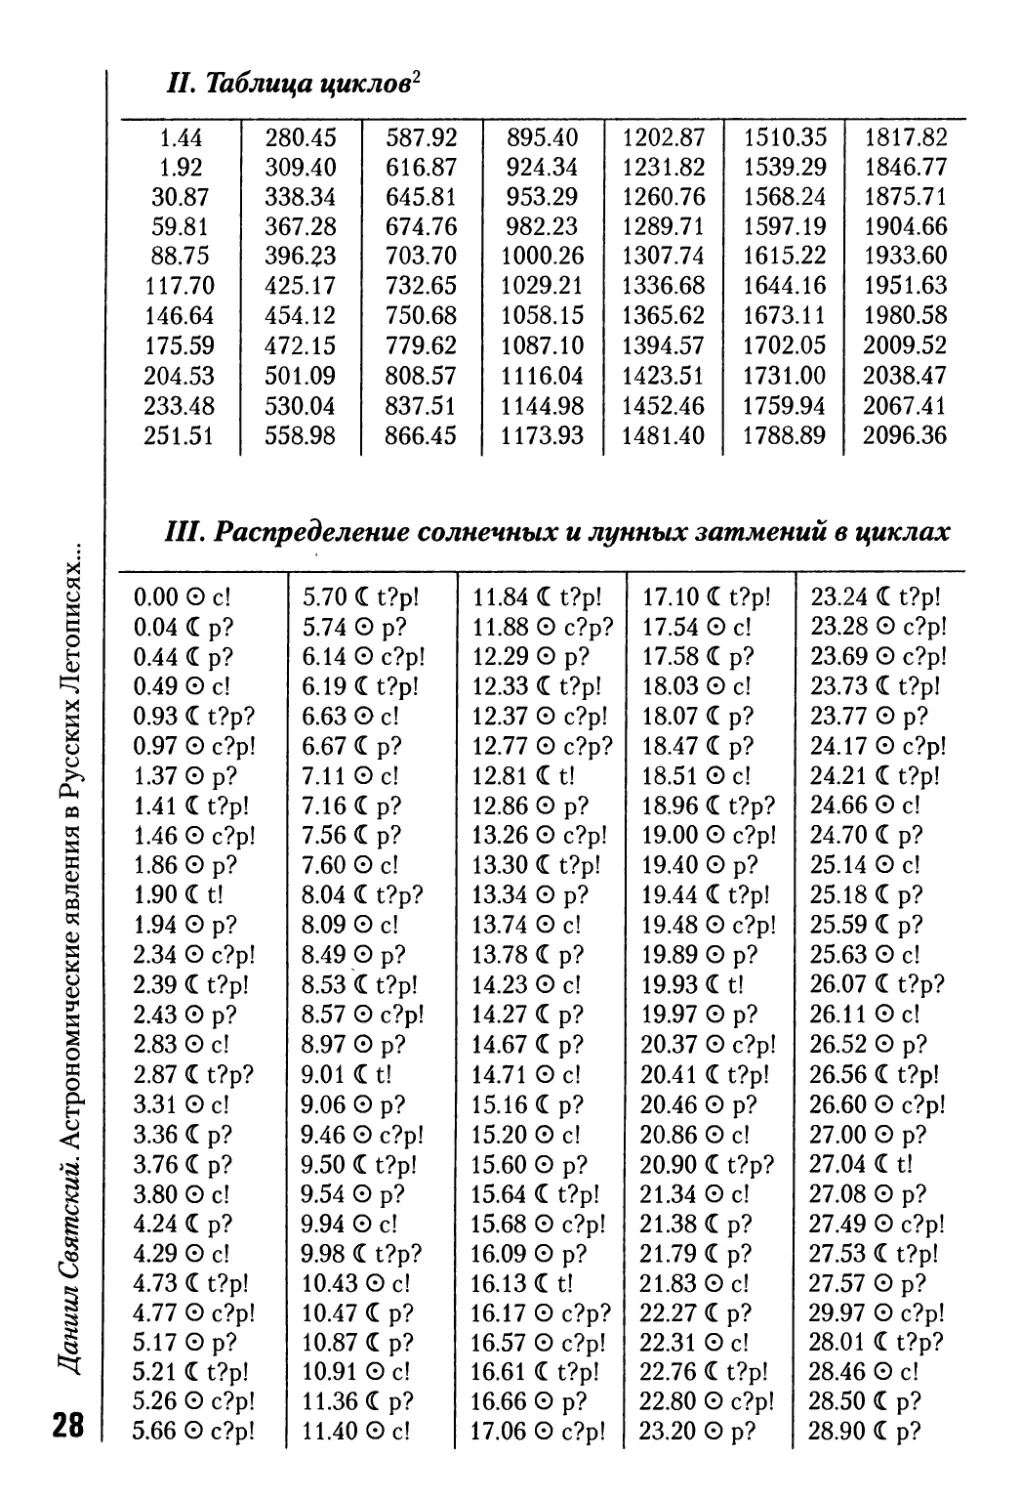 II. Таблица циклов
III. Распределение солнечных и лунных затмений в циклах